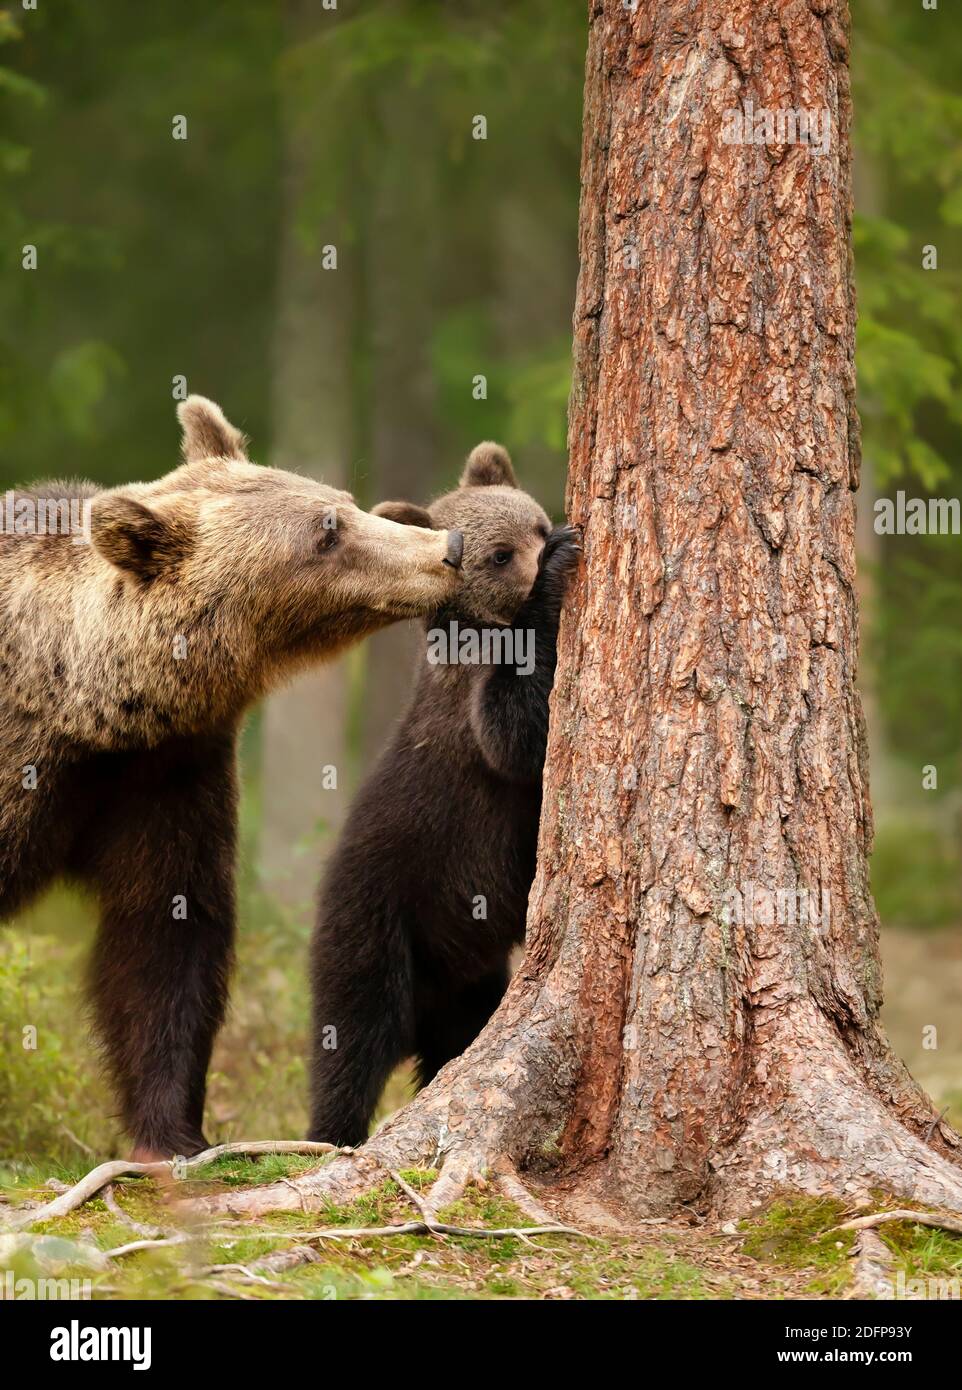 Primo piano di un orso bruno eurasiatico (Ursos arctos) guardando il suo cucciolo giocoso cercando di salire un albero, Finlandia. Foto Stock